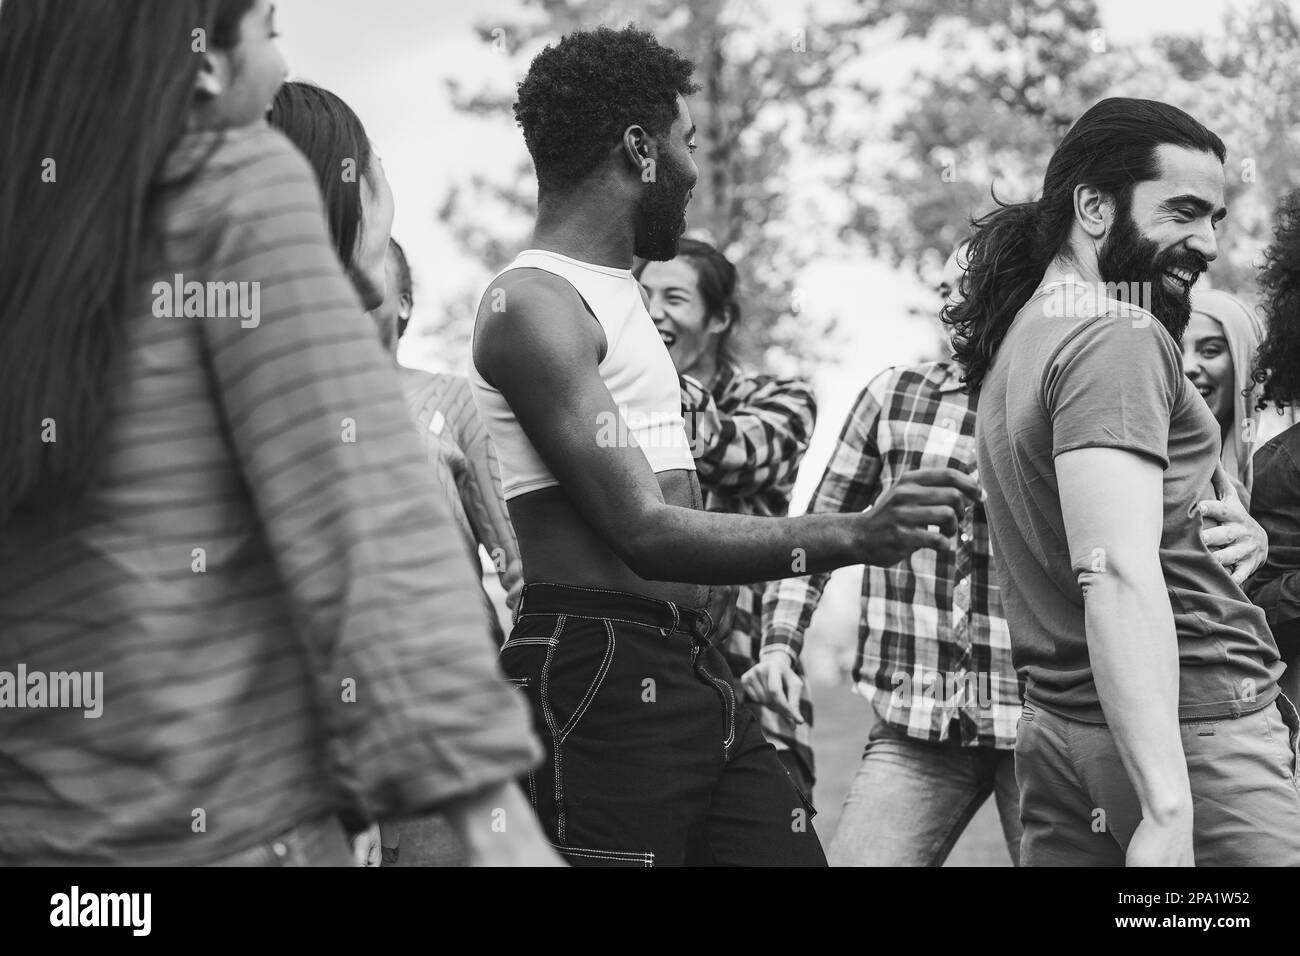 Junge, vielfältige Menschen, die gemeinsam im Freien tanzen - Schwerpunkt auf afrikanischem Schwulenkopf - Schwarz-Weiß-Schnitt Stockfoto